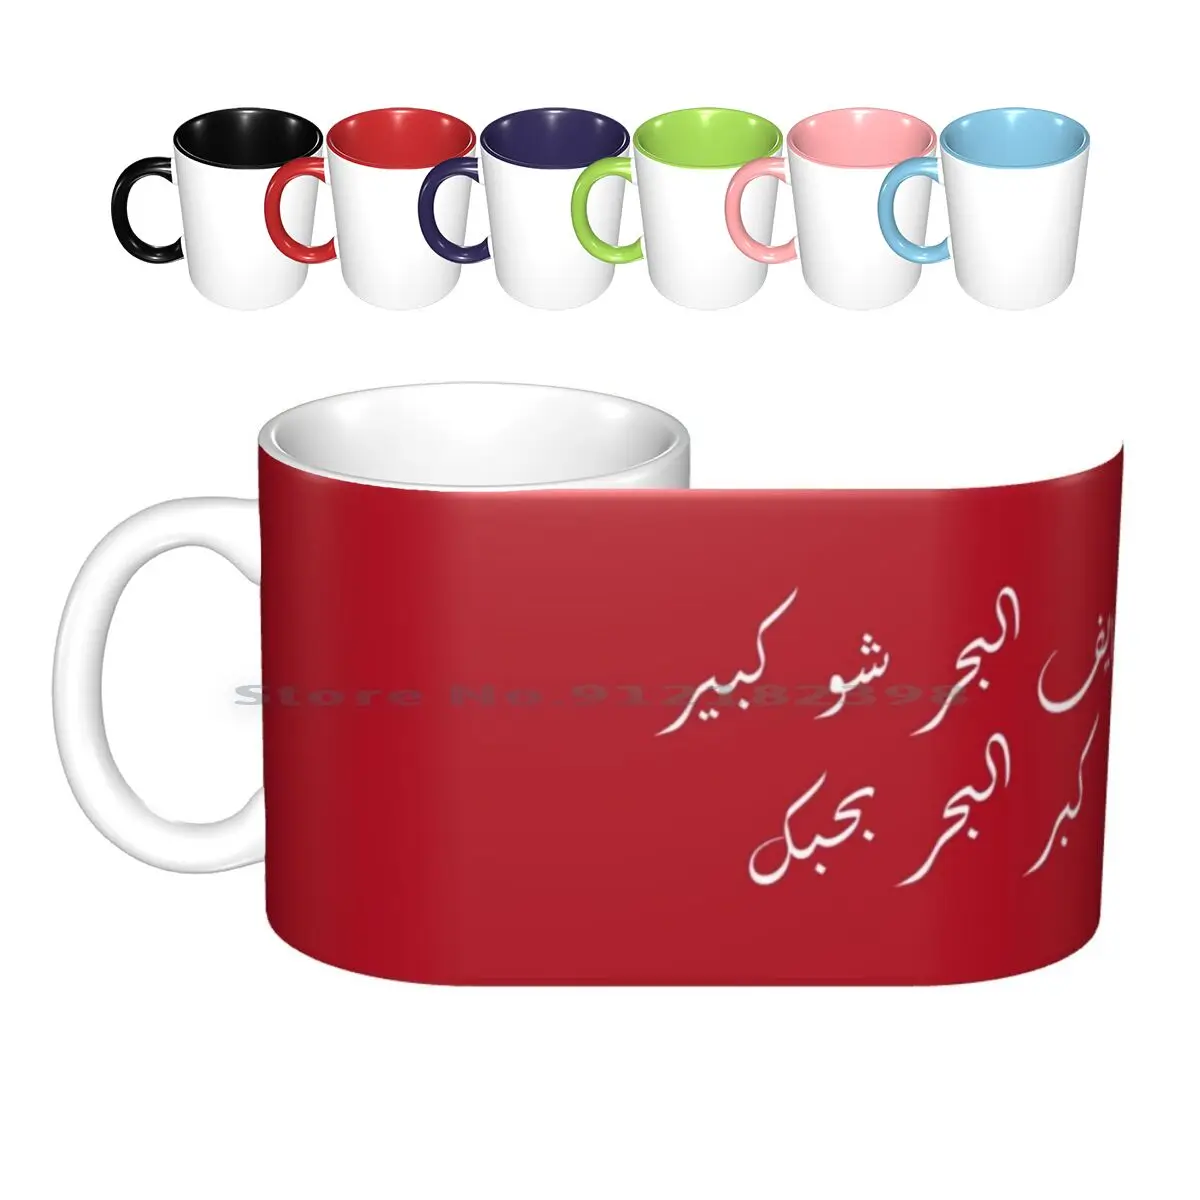 

Белый   Керамические кружки, кофейные чашки, кружка для молока и чая, Арабская легенда, певец, звезда, старые времена, Fairouz, Fairoz, Fayroz, Ливан